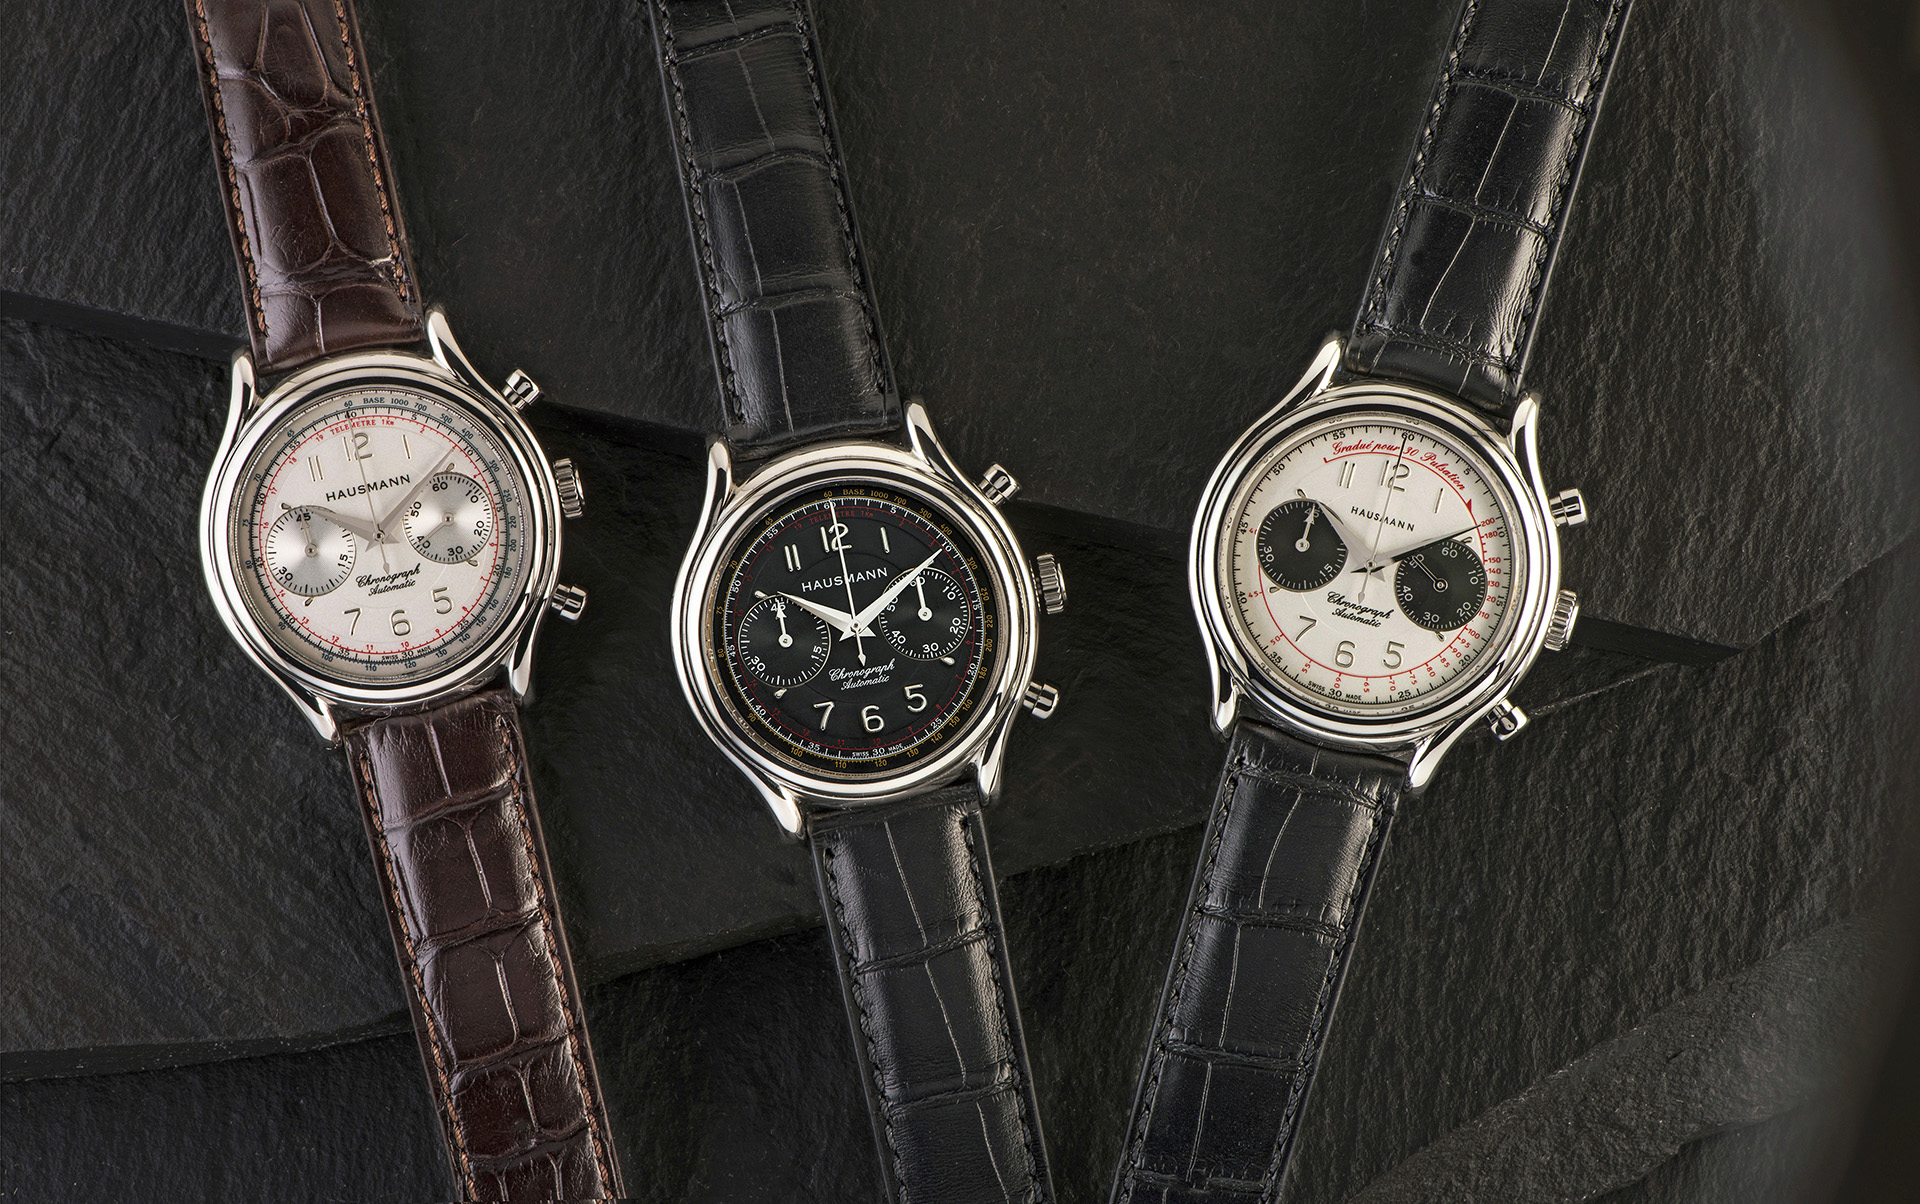 I nuovi cronografi meccanici Hausmann & Co., nelle tre varianti di quadrante. 